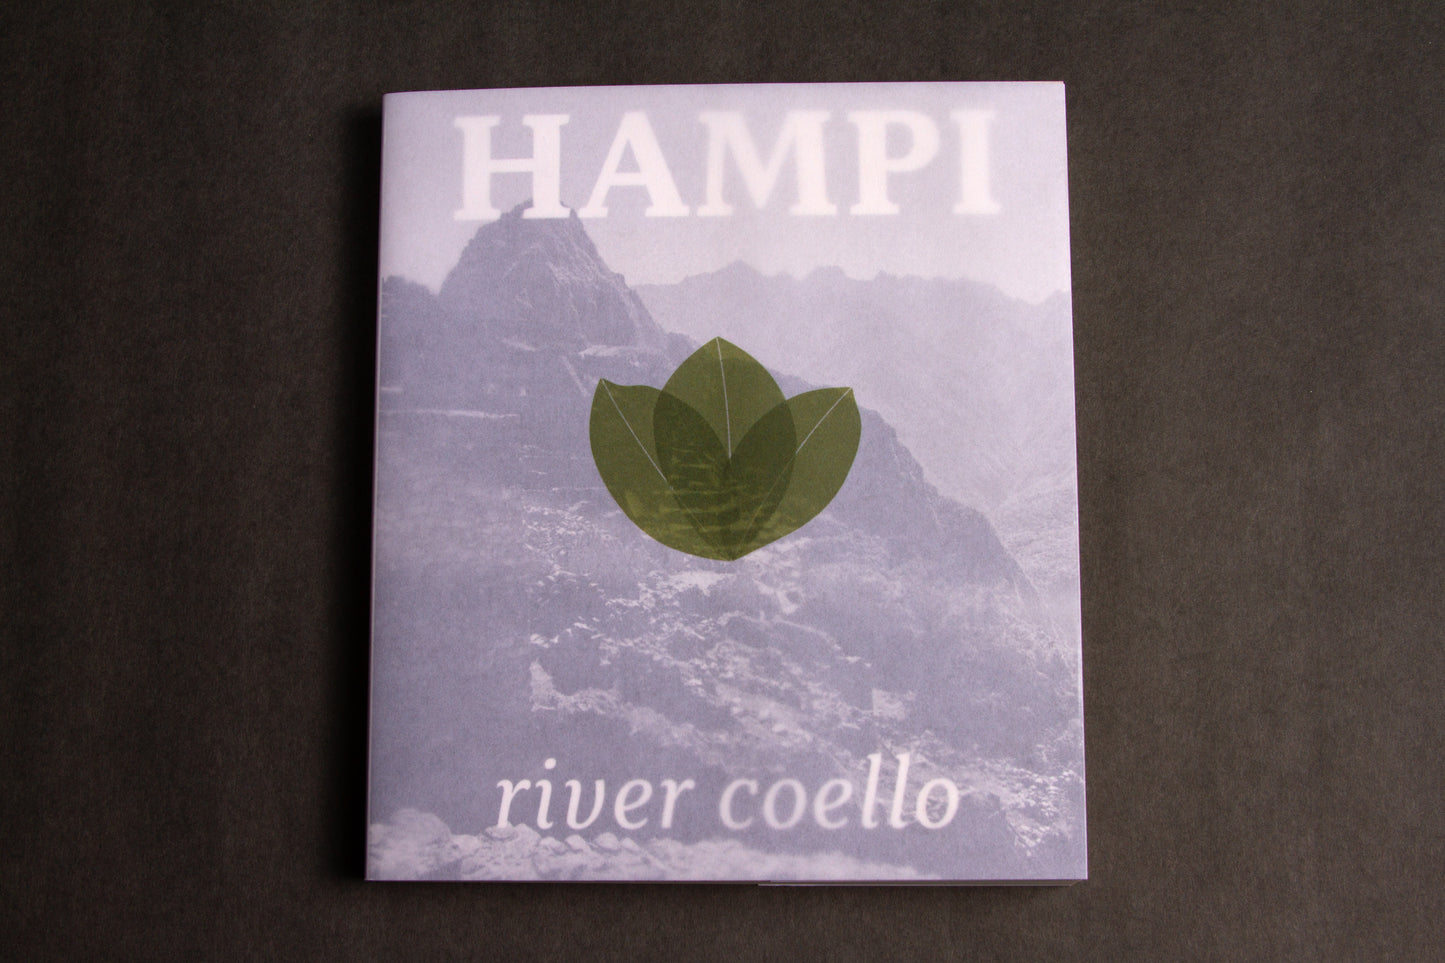 HAMPI by River Coello